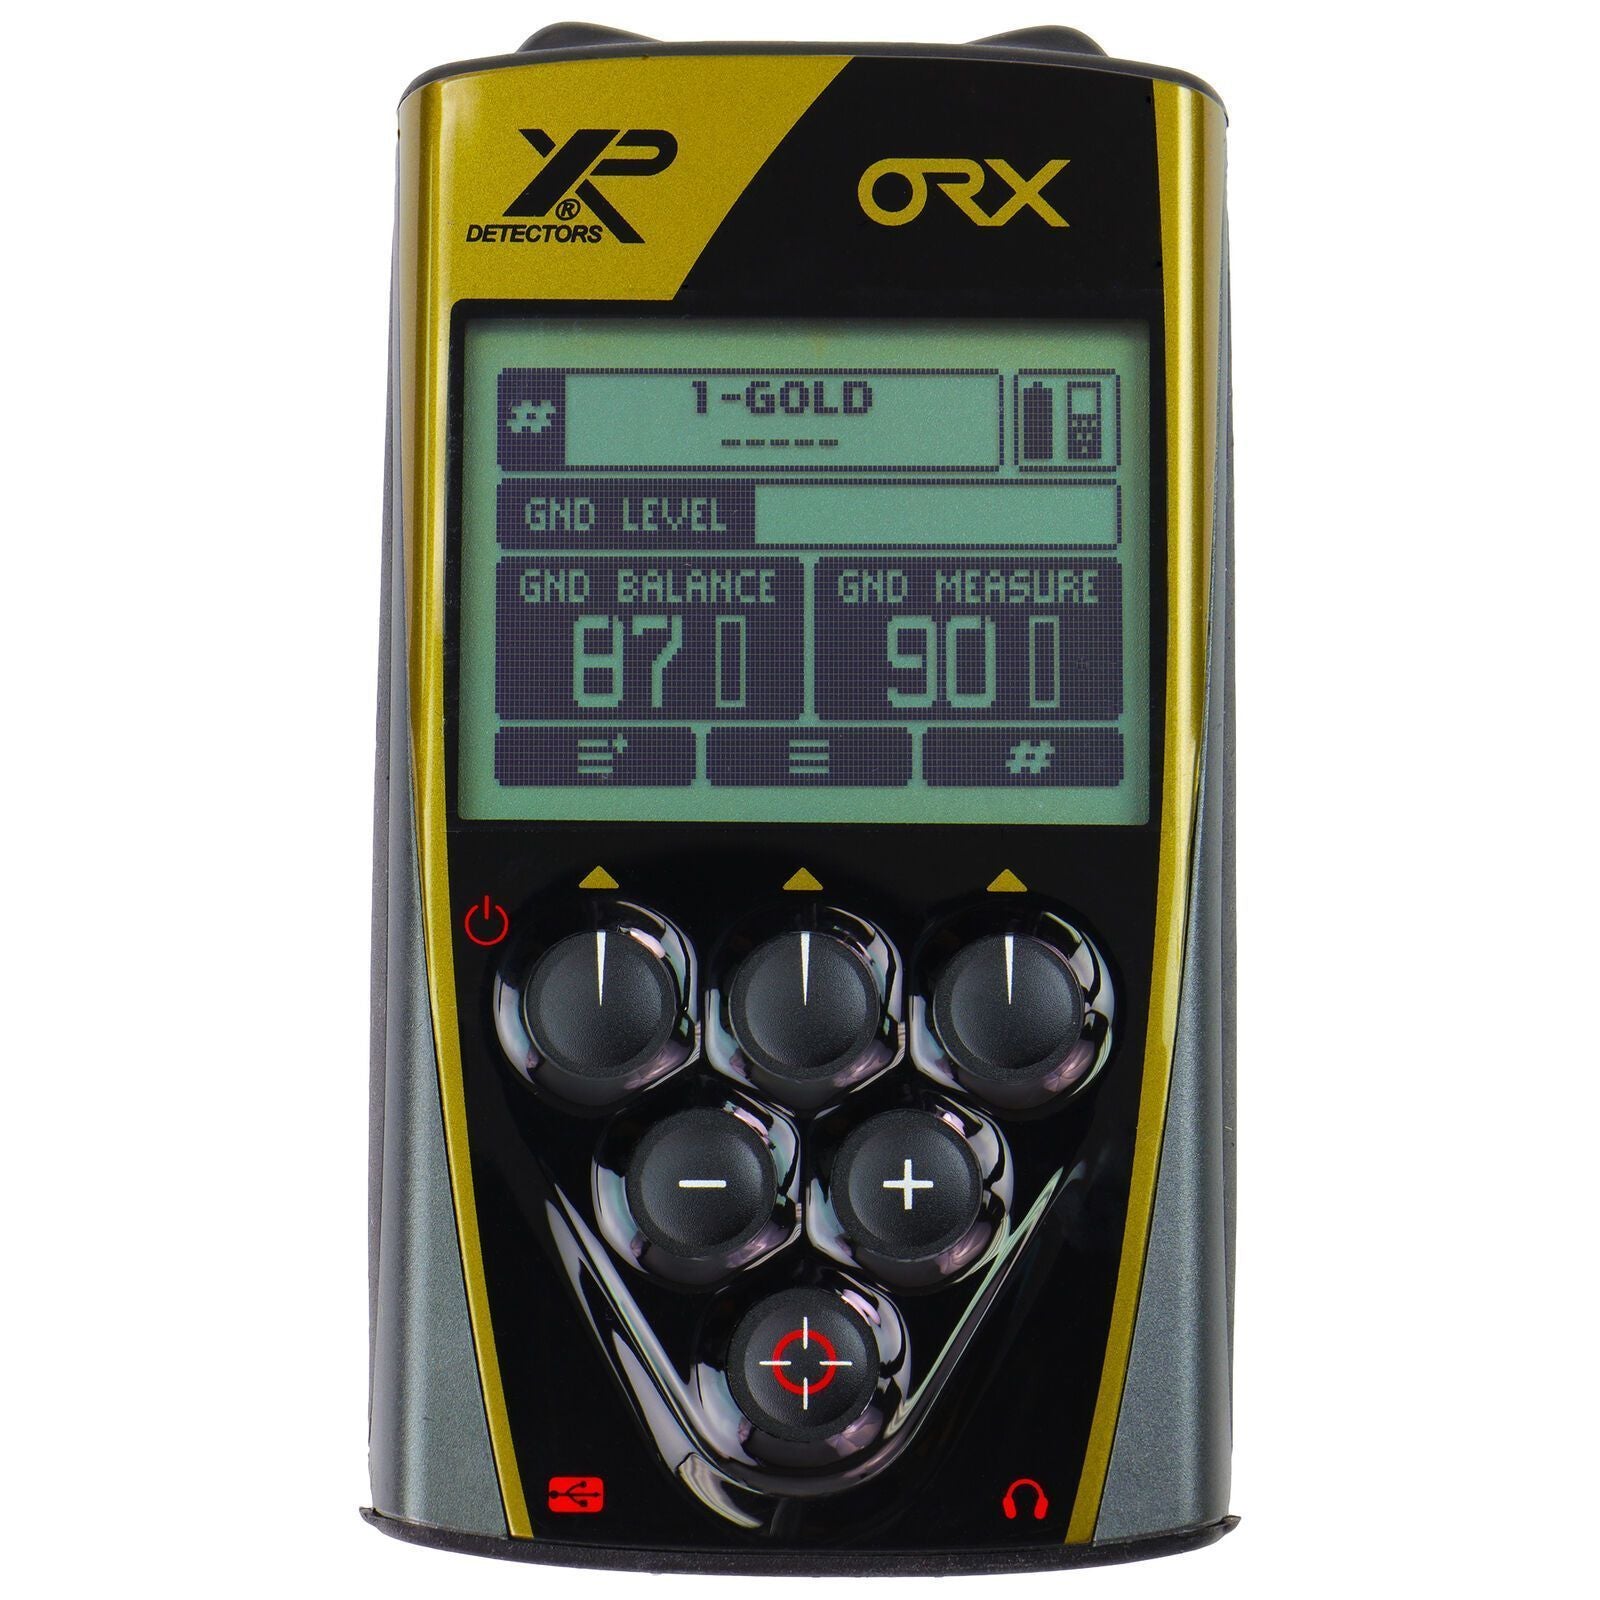 XP ORX Metal Detector 9" X35 Coil & RC-Destination Gold Detectors